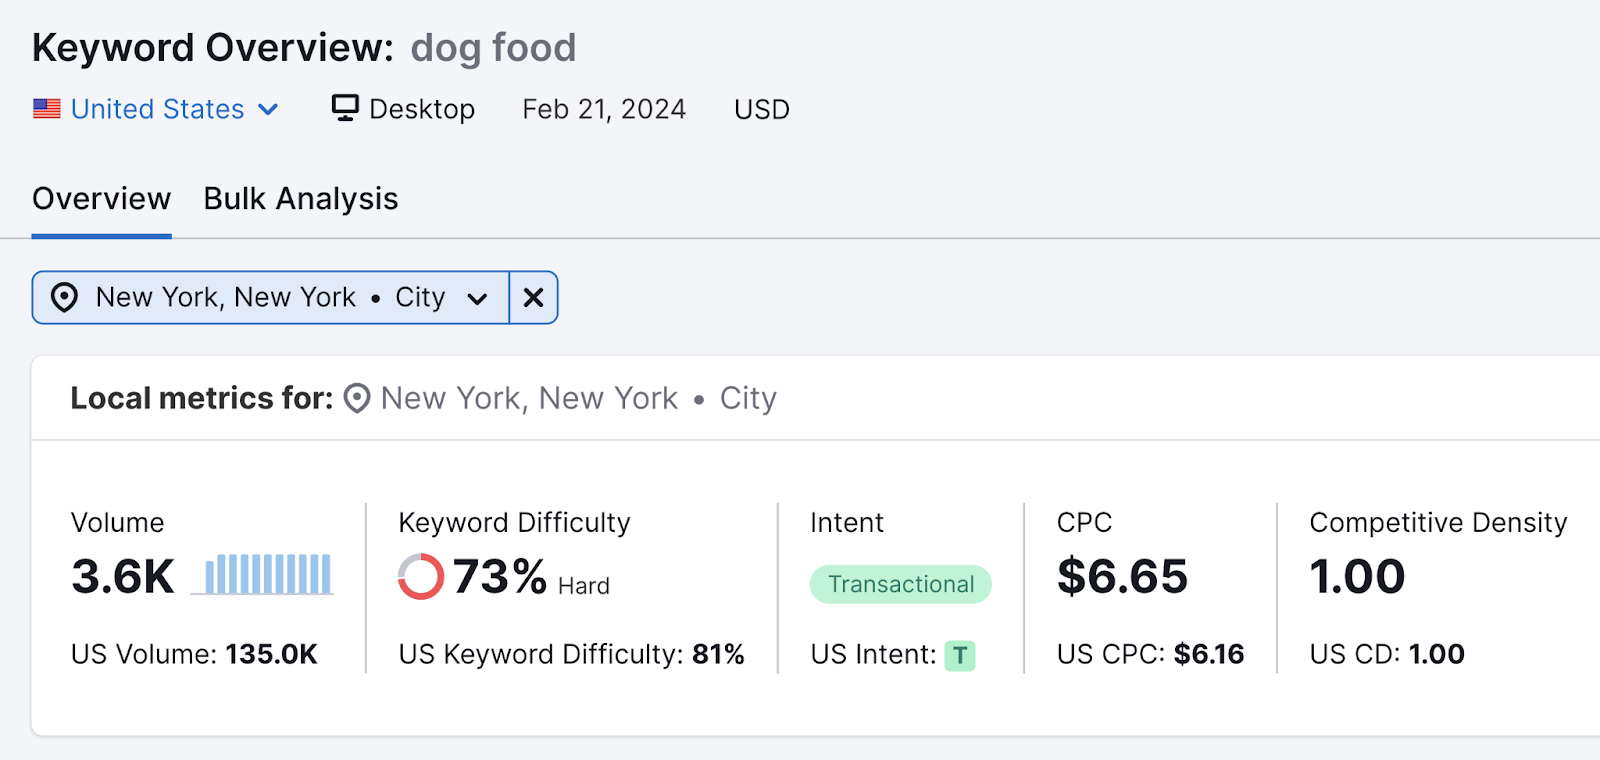 Volume affiché pour le mot clé « nourriture pour chiens » dans la ville de New York dans l'outil de présentation des mots clés